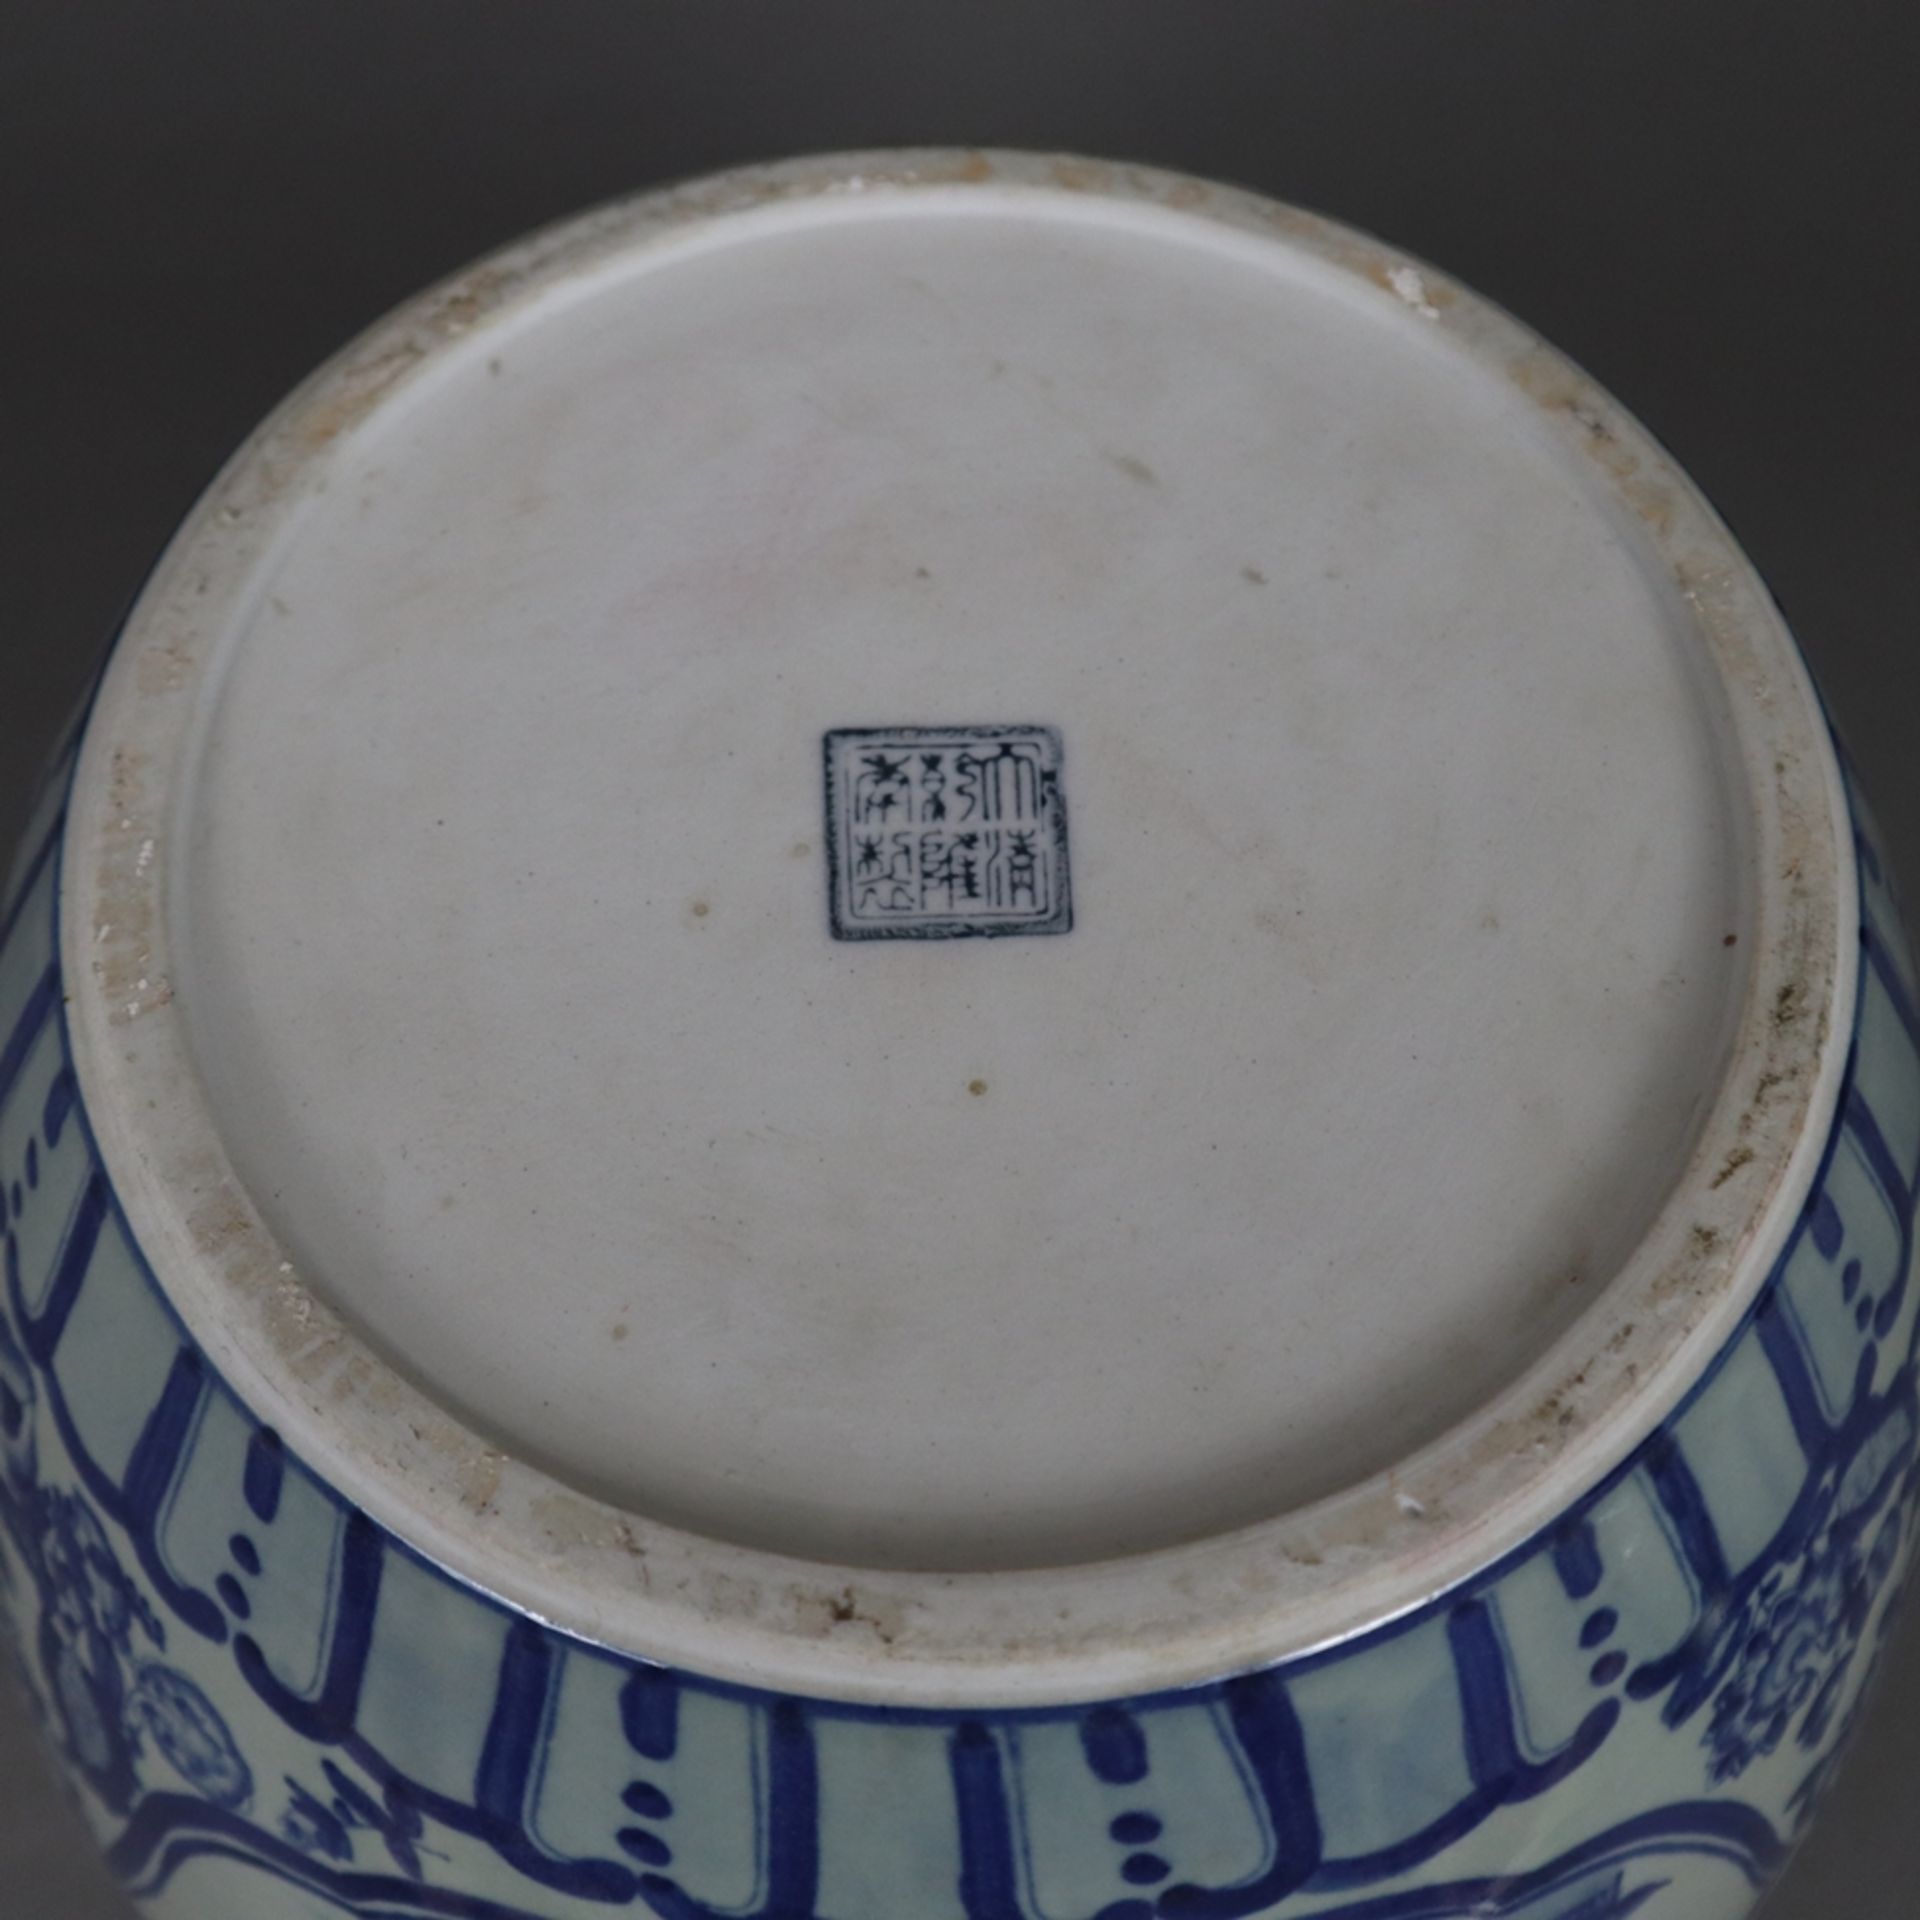 Blau-weißer Cachepot - China, 20. Jh., Porzellan, blau-weiß bemalt, bauchiger Korpus mit eingezogen - Bild 9 aus 9